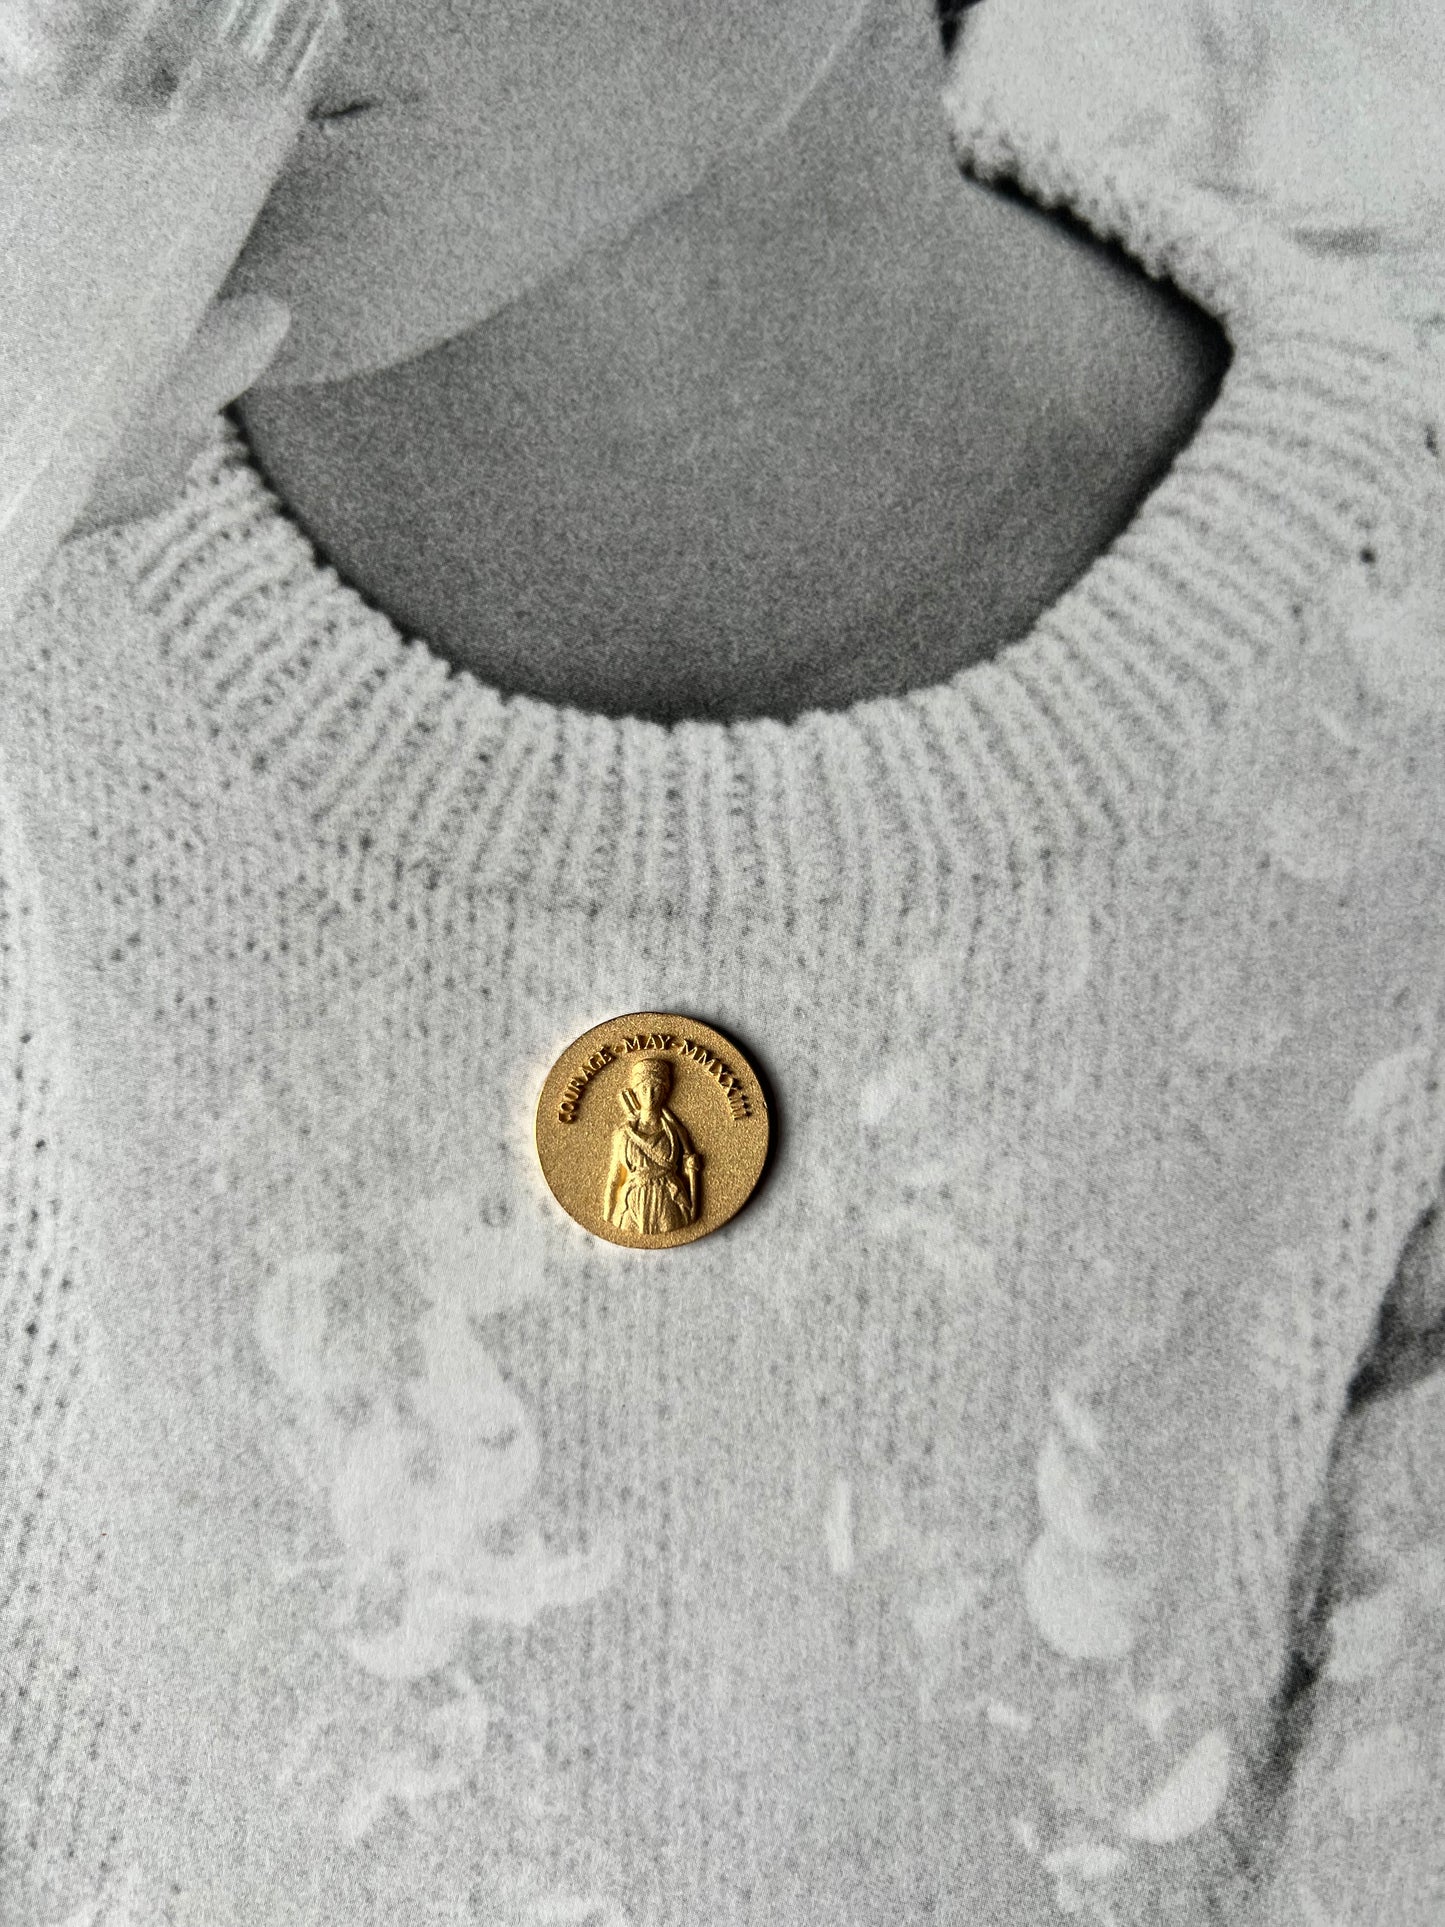 Artemis antique coin gold